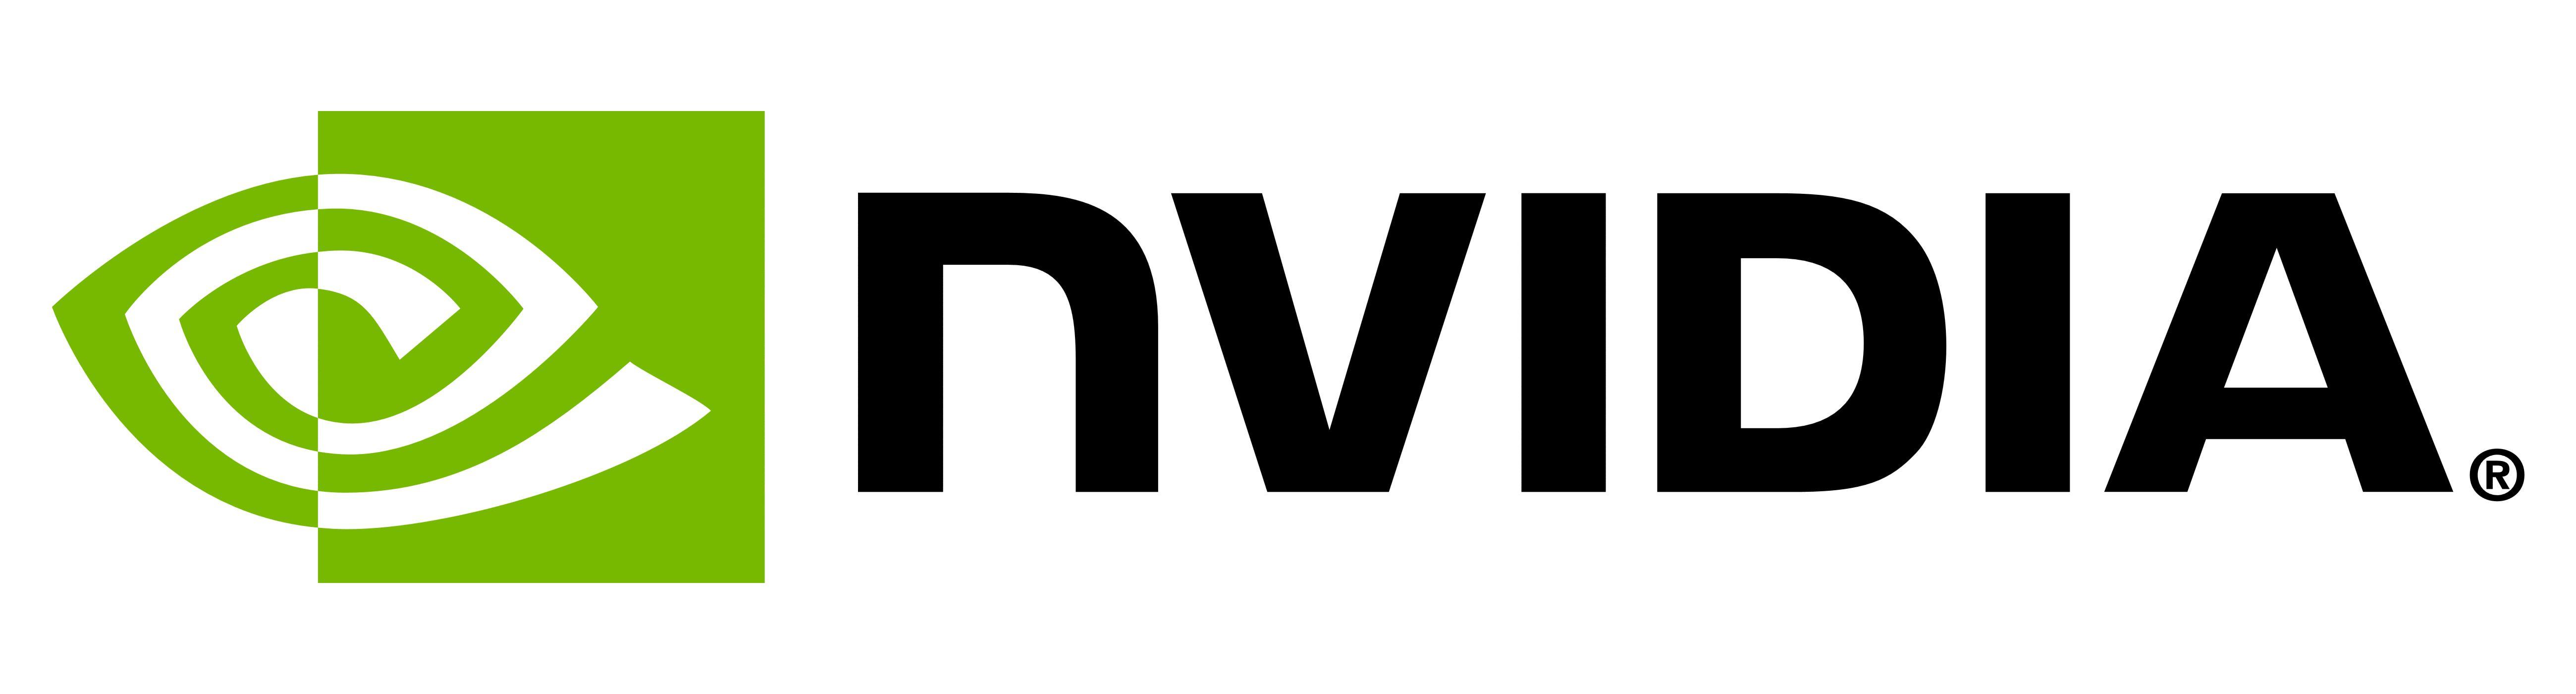 NVIDIA Logo - NVIDIA Logo, NVIDIA Symbol, Meaning, History and Evolution